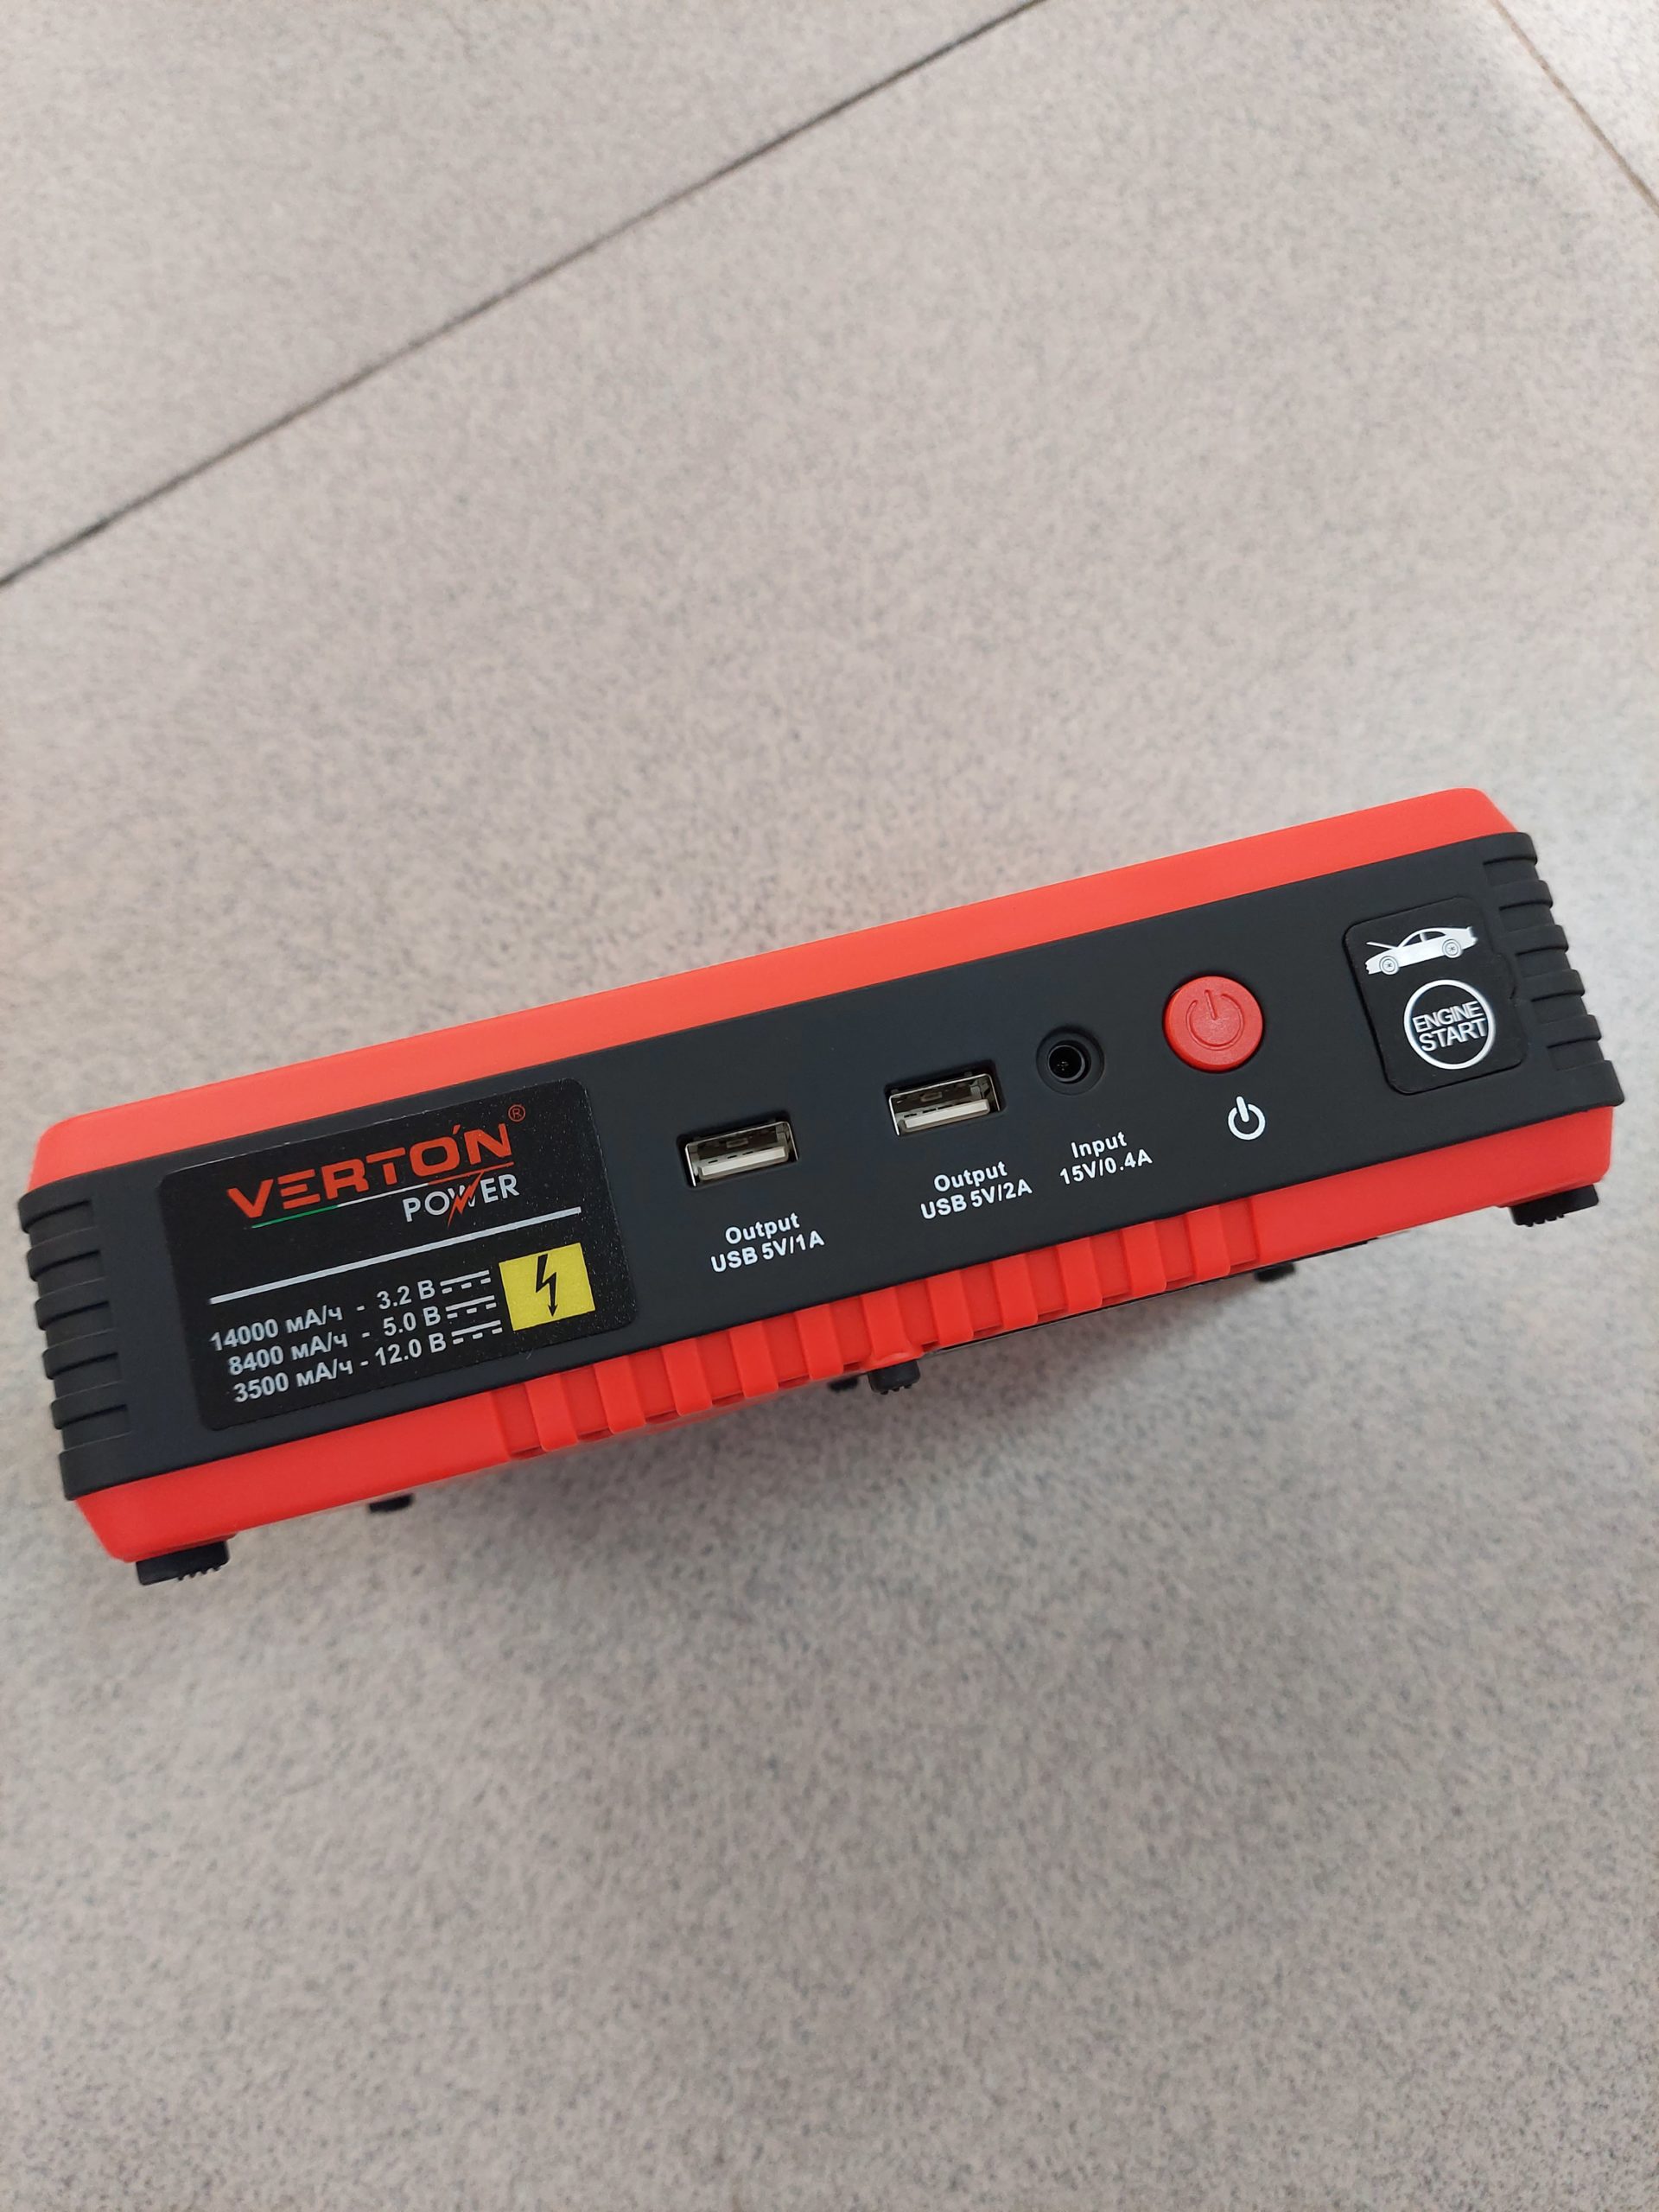 Пусковое устройство VERTON Energy ПУ-1400 (напр.сети 230В,макс. пуск. ток 600А,компрессор 10 б,емкость 14000мА*ч/44,8Вт*ч,тип аккум. Li-Po,USB1:5В/1A,USB2:5В/2A,кол-во USB:2шт)